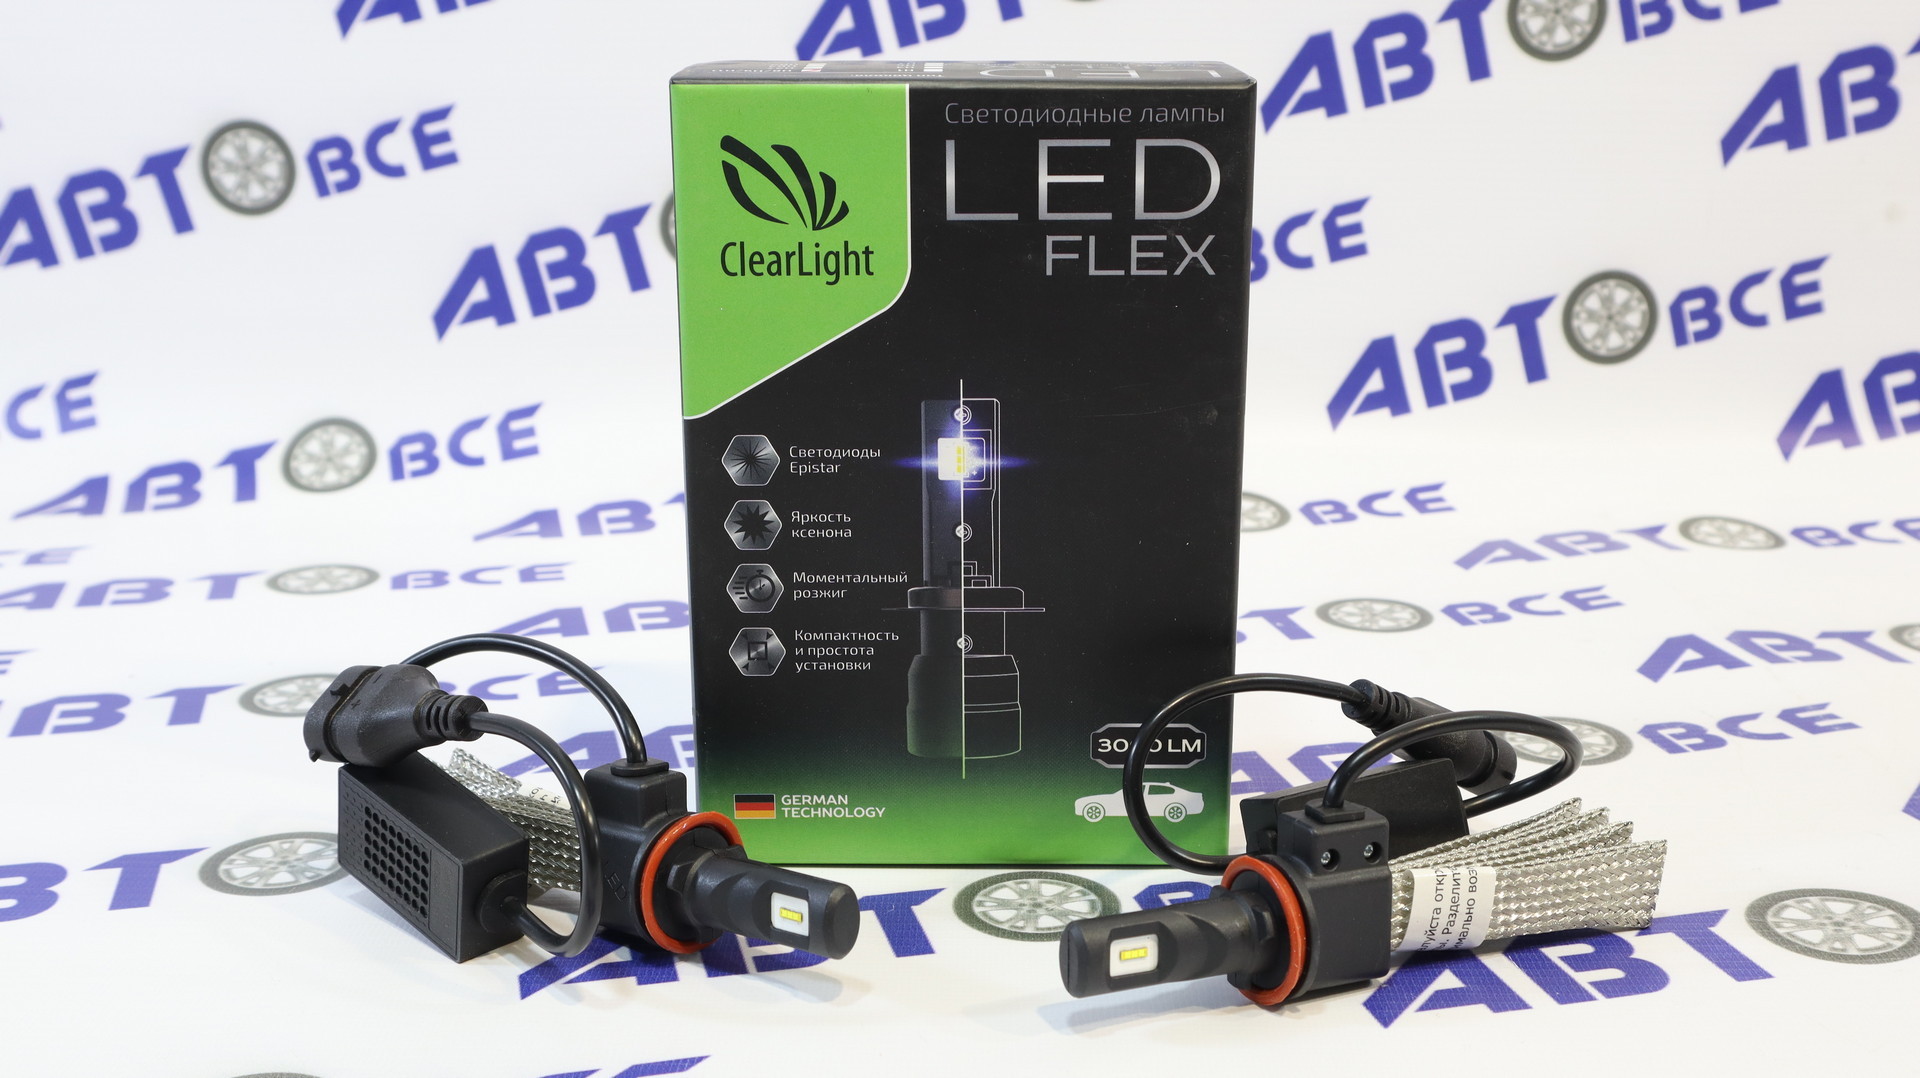 Лампа фары LED - диодная H11 комплект 2шт (гибкий кулер) (CSP) Clearlight Flex 